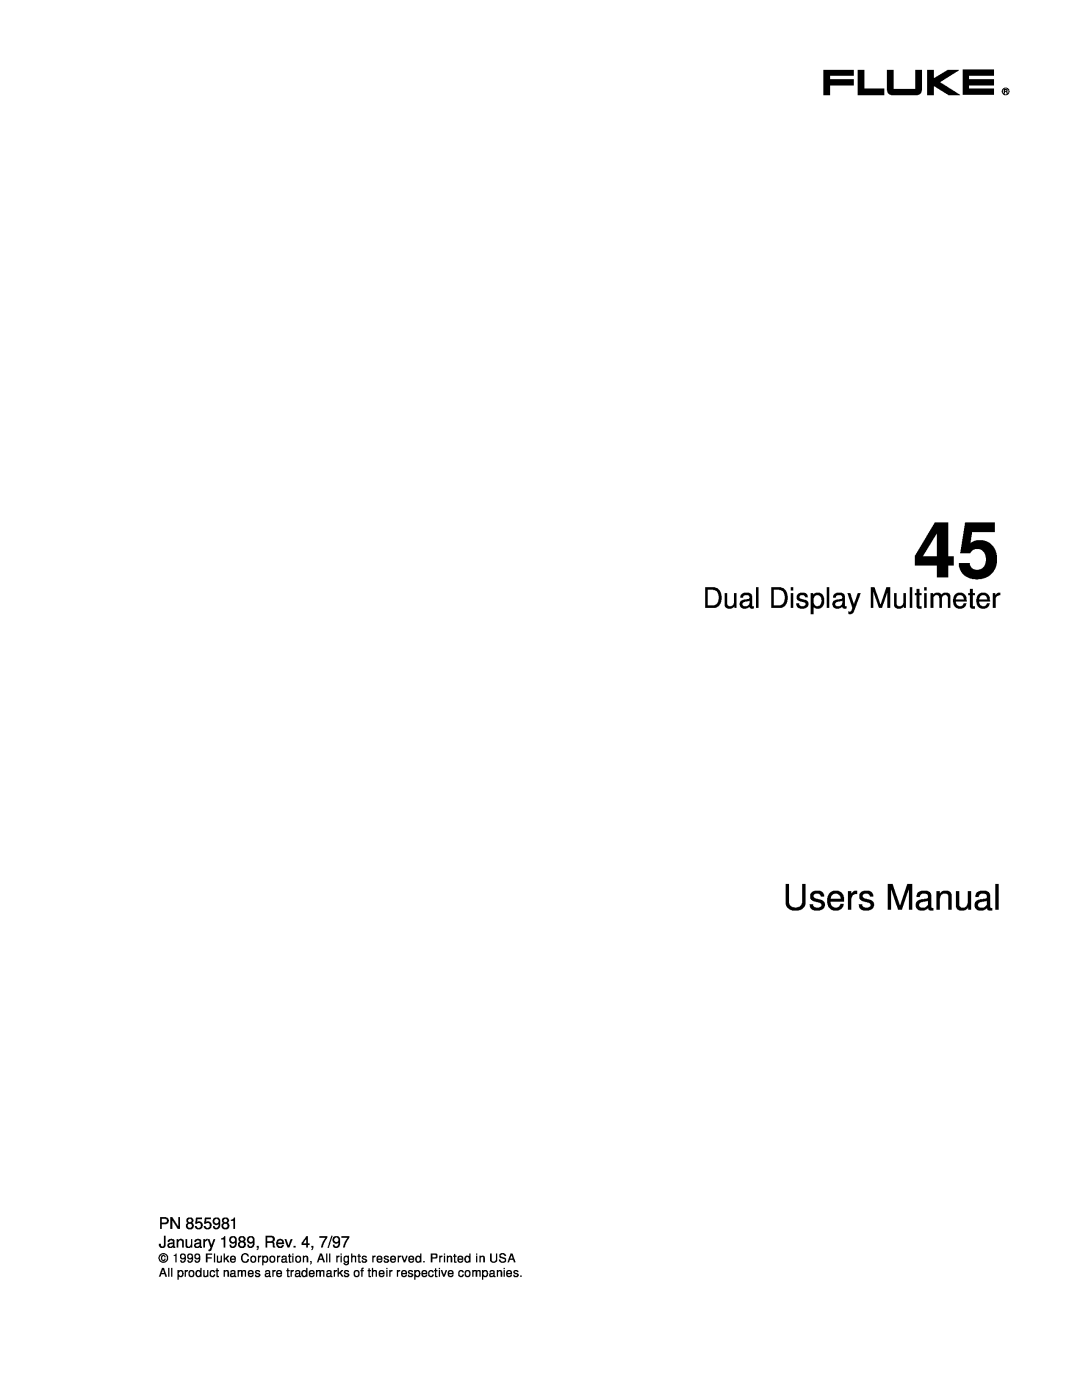 Fluke 45 user manual Dual Display Multimeter, Users Manual 